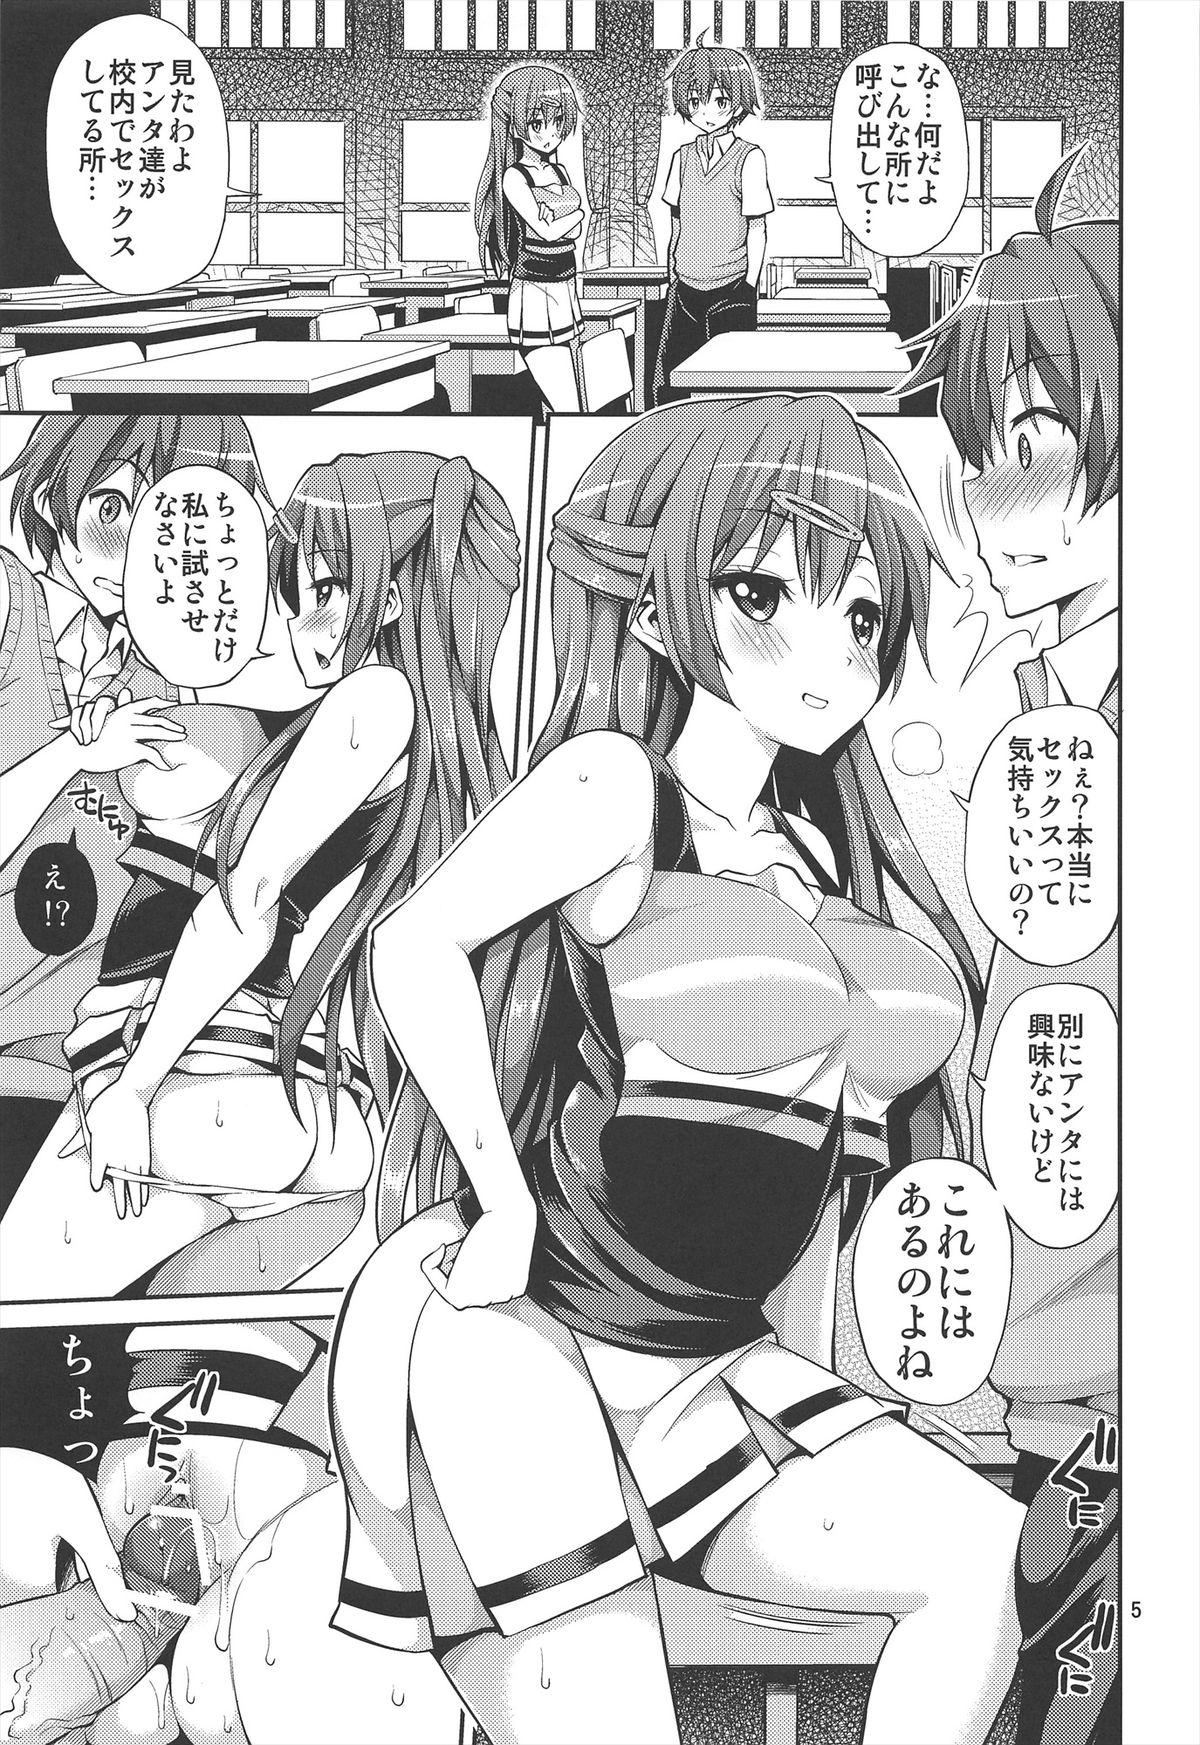 Sexo Chuunibyou Demo H ga Shitai! 2 - Chuunibyou demo koi ga shitai Secretary - Page 5